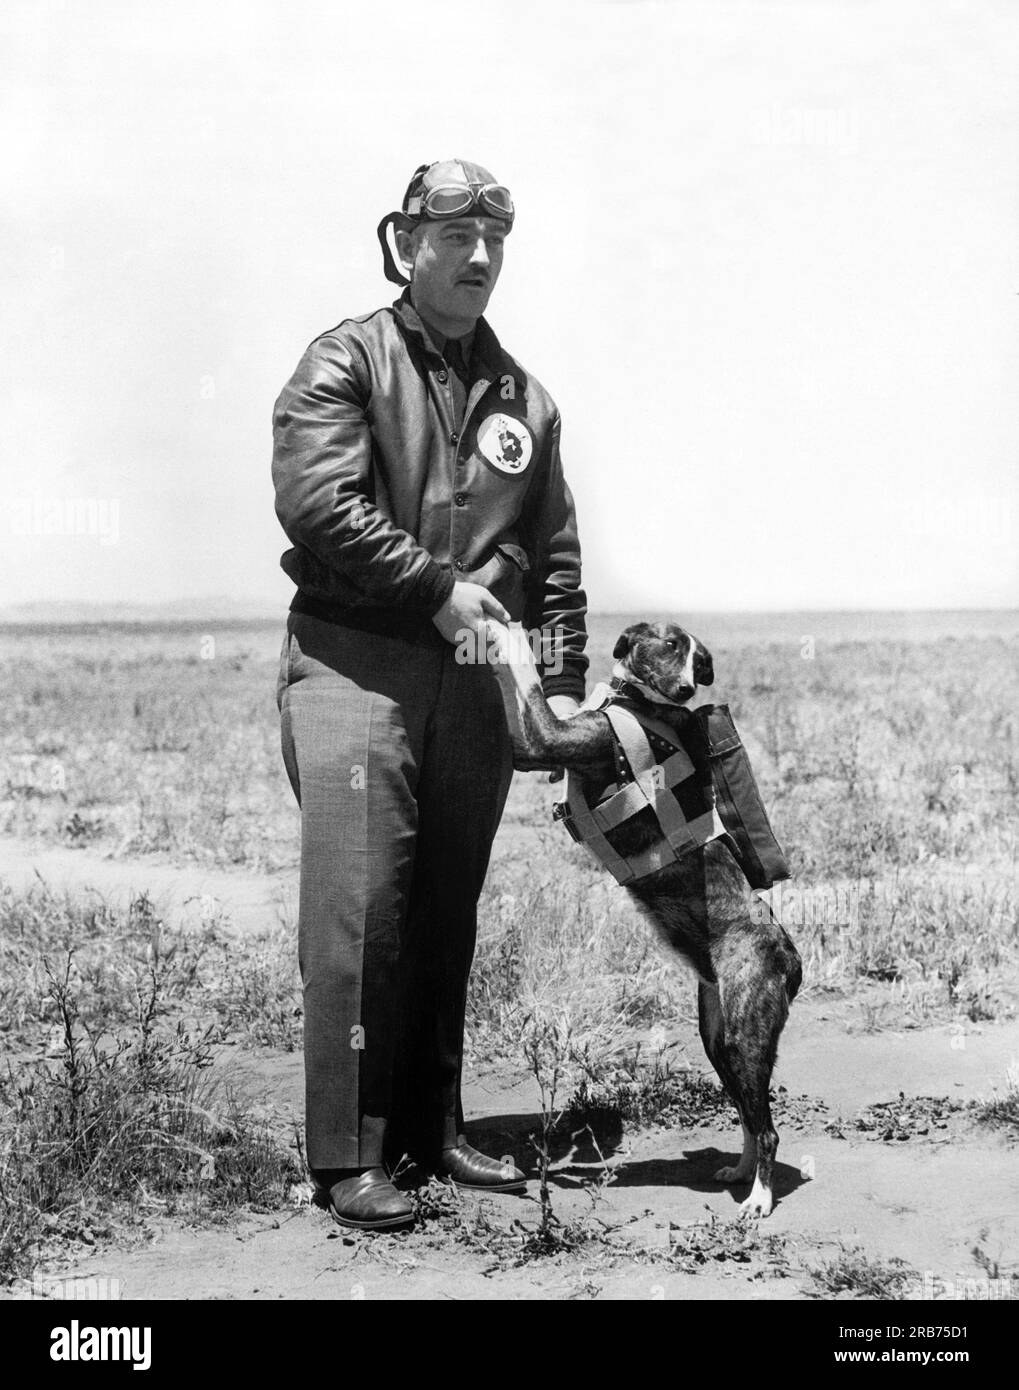 San Diego, Californie : vers 1930 Capitaine E. C. Black, commandant du 11th Bombardment Squadron, avec Jock, le Scotch Terrier qui l'accompagnera sur le vol transcontinental de 21 bombardiers de l'armée, navires de poursuite et avions de transport, sous le commandement du major Carl Andrew Spatz. Notez le parachute spécial pour le chien. Banque D'Images